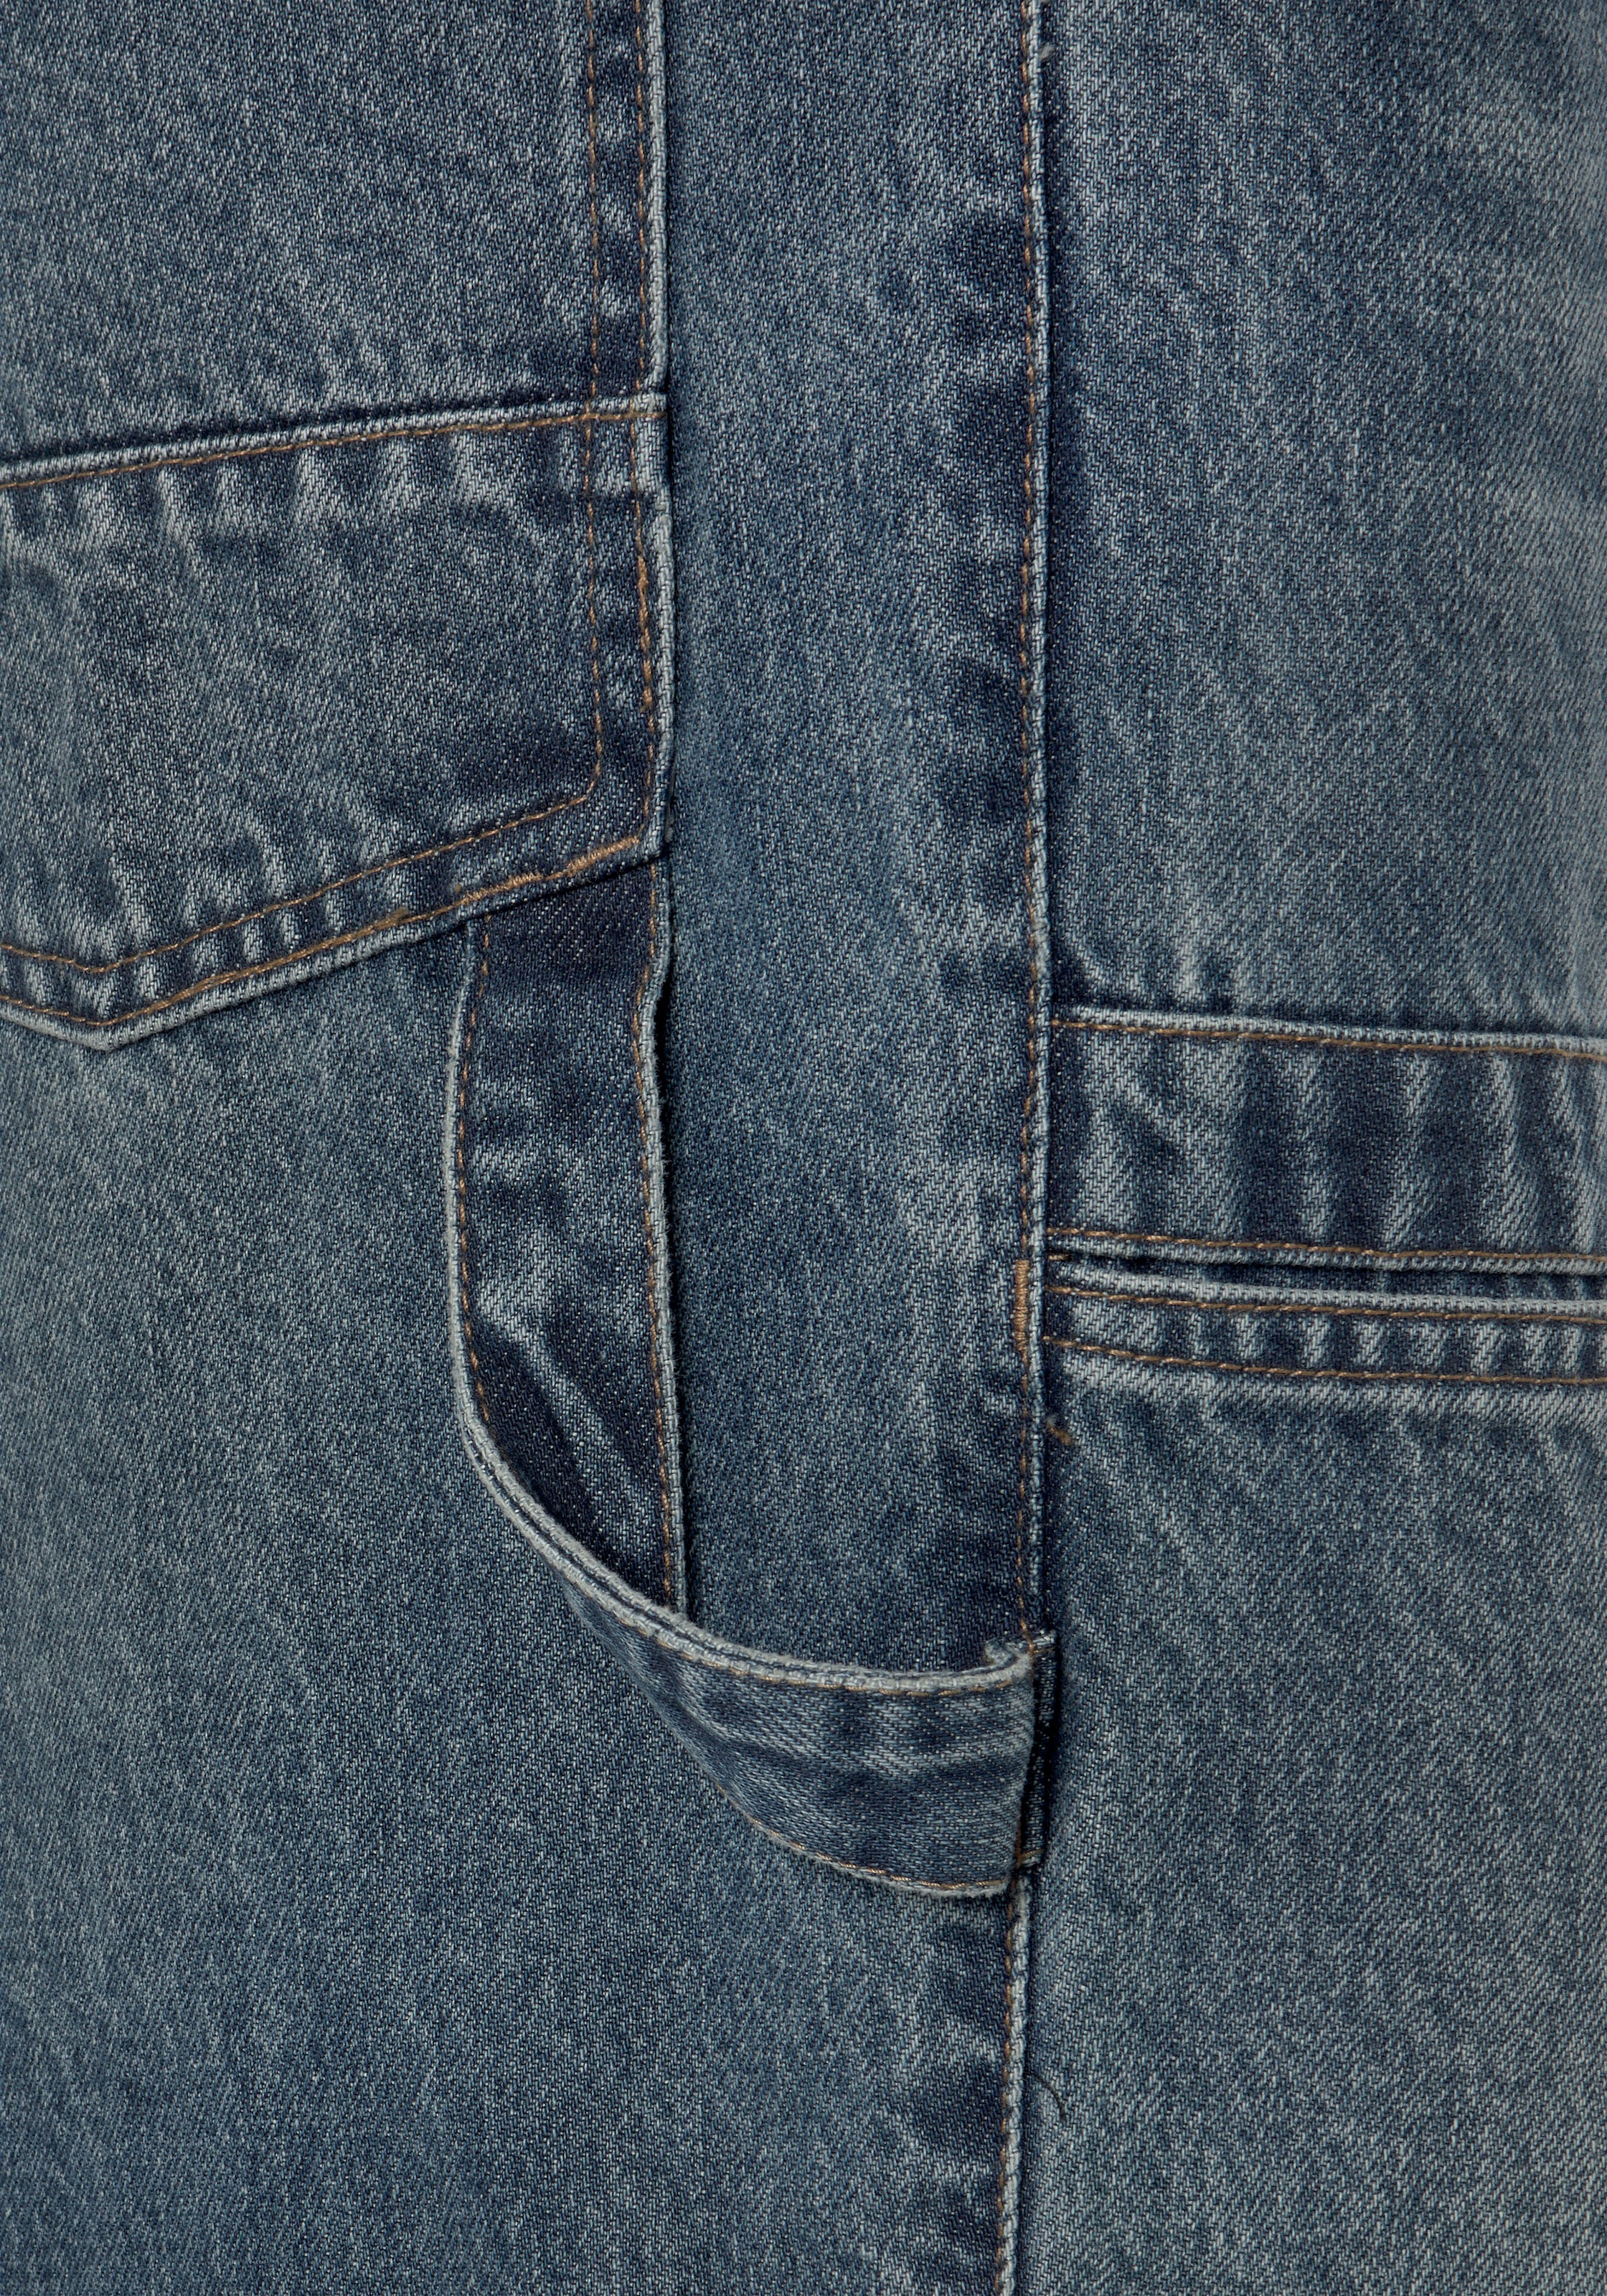 Northern Country Arbeitshose »Cargo Jeans«, (aus 100% Baumwolle, robuster Jeansstoff, comfort fit), mit dehnbarem Bund, mit 6 praktischen Taschen